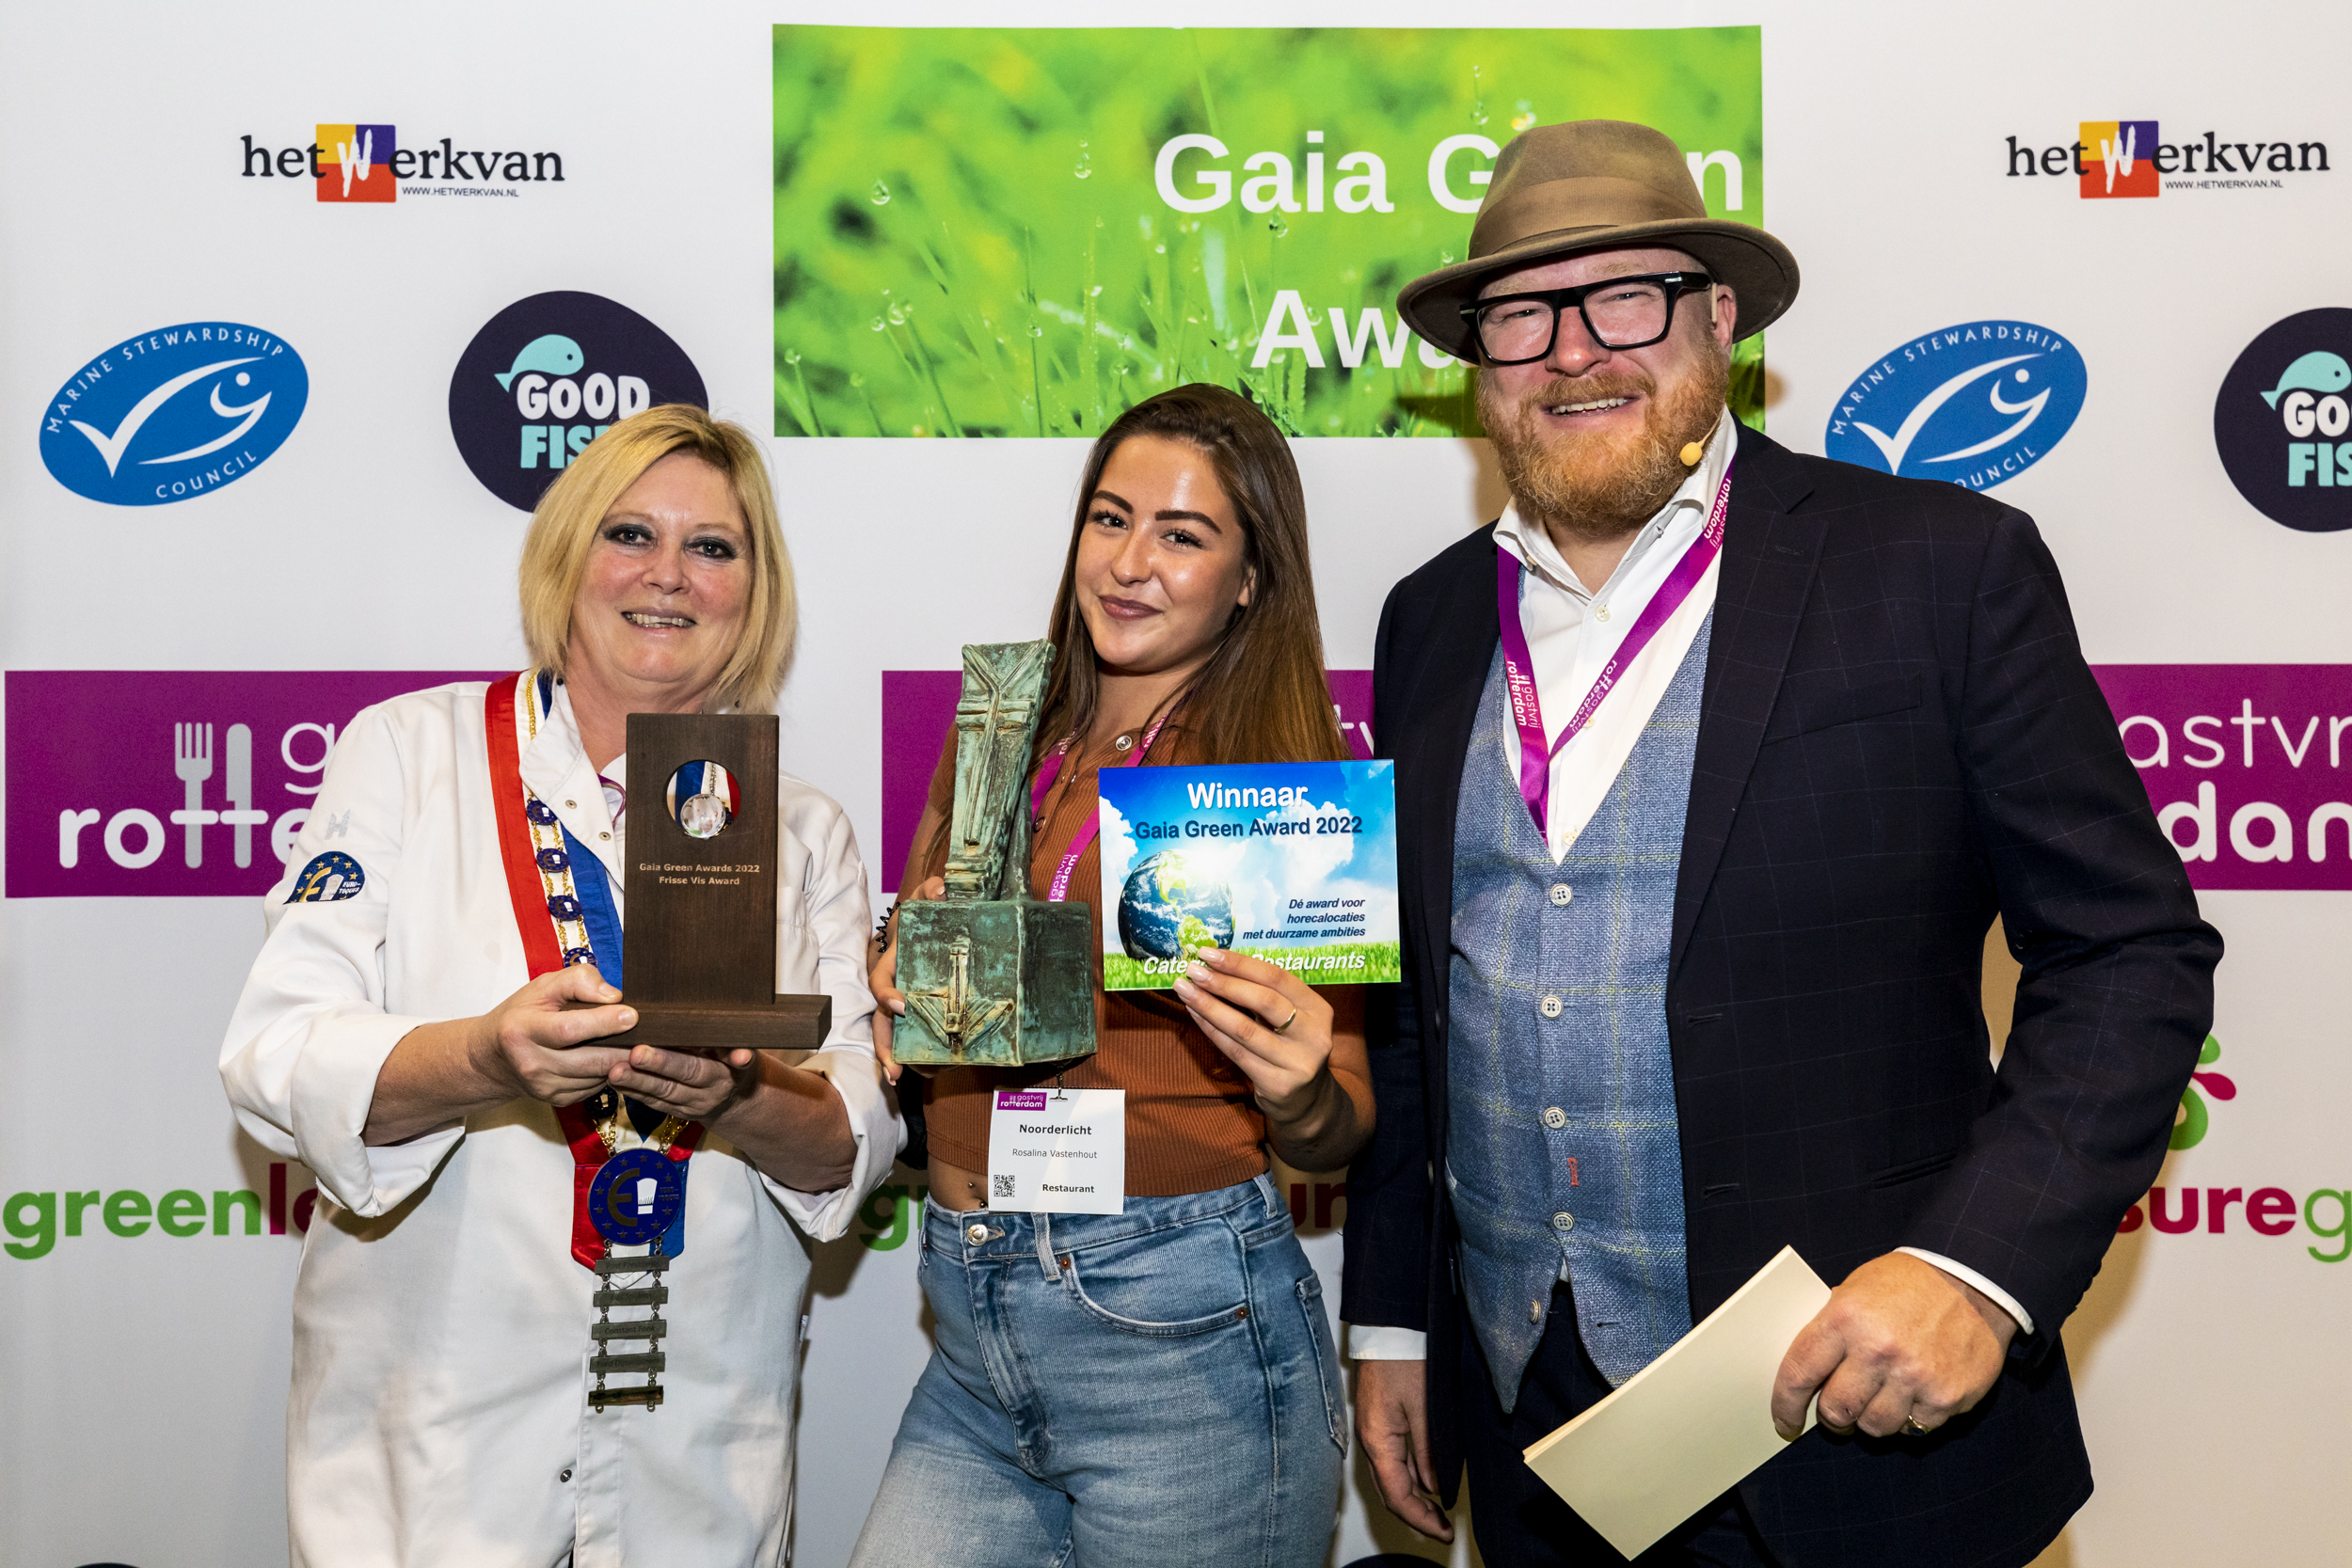 Meld je duurzame horecalocatie aan voor de Gaia Green Awards 2023